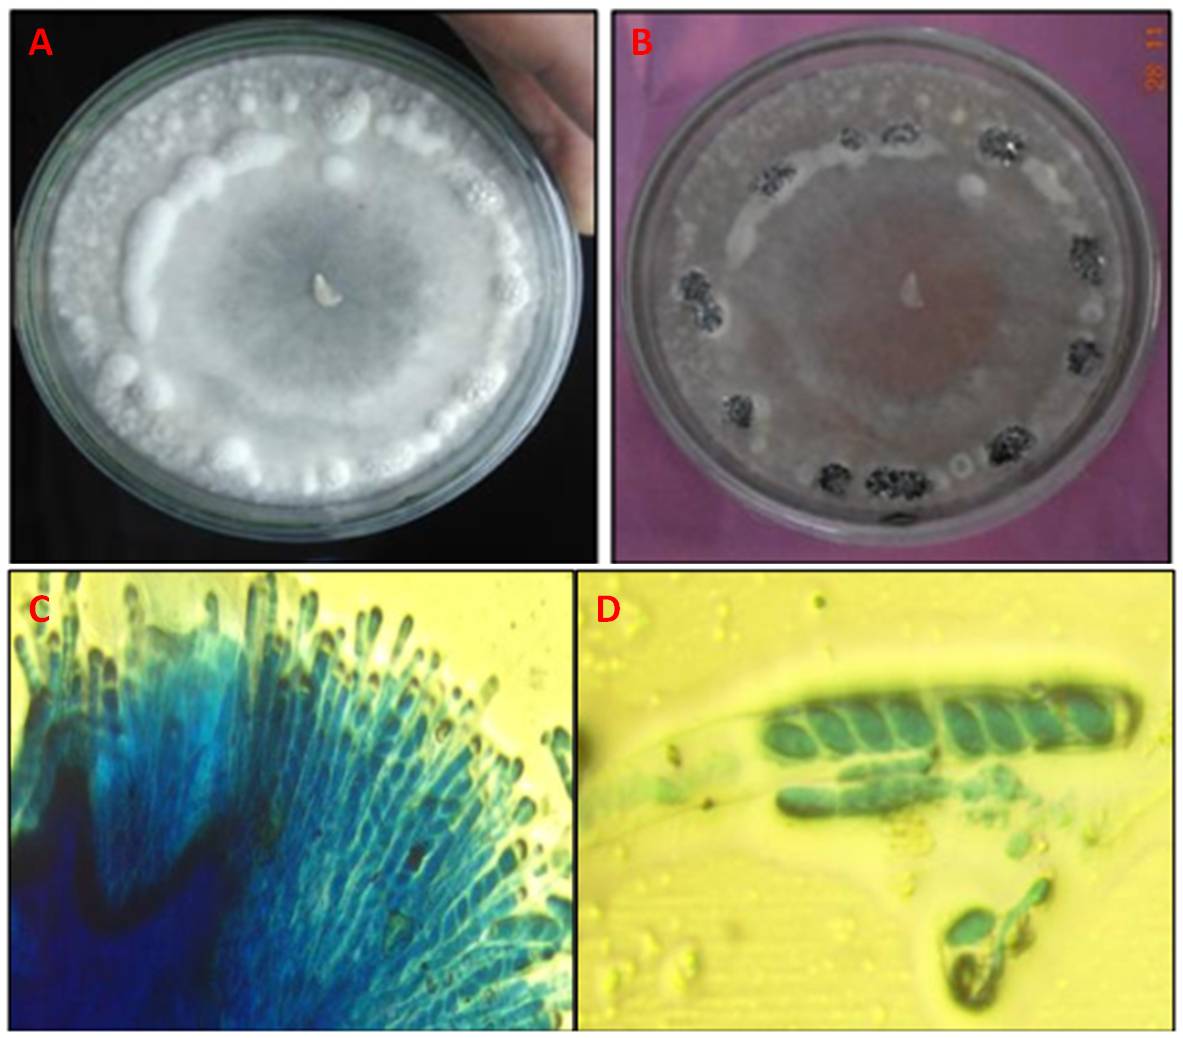 Figura 10 – Aspetti colturali e microscopici di S. sclerotiorum. A) Crescita delle colonie fungine su PDA; B) Formazione degli sclerozi; C) Disposizione degli aschi nella periferia dell’ascocarpo; D) Aschi con otto ascospore